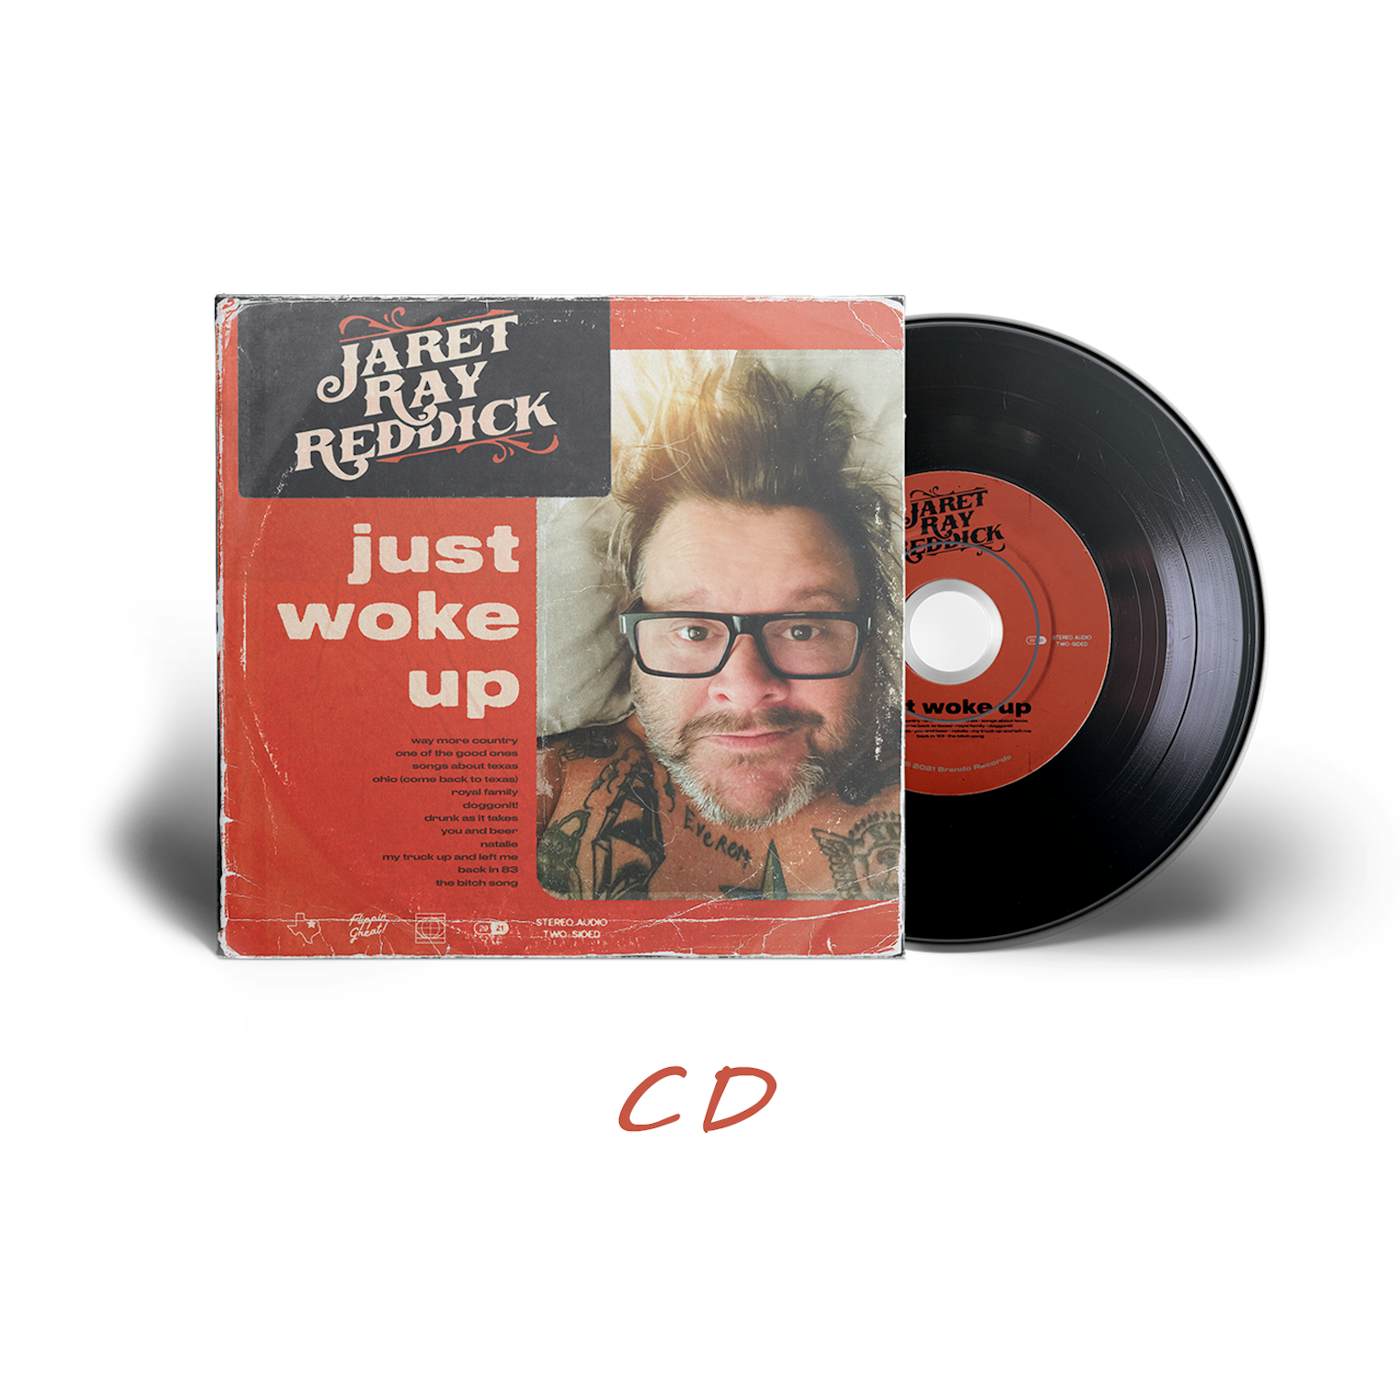 Jaret Reddick Jaret Ray Reddick - Just Woke Up CD